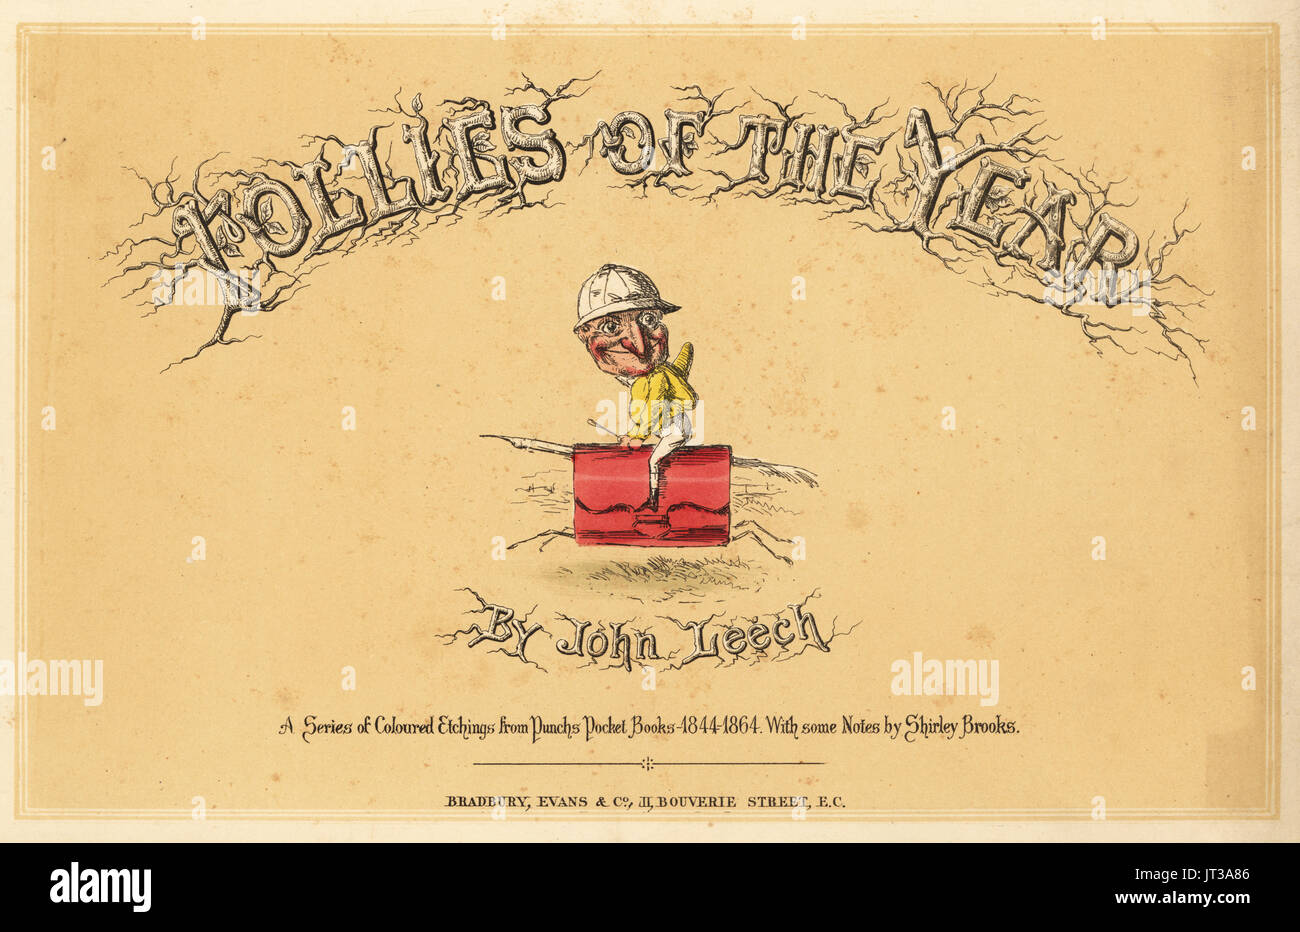 Page de titre avec le titre écrit en brindilles et vignette d'un jockey en soieries à cheval faite d'un étui en cuir, plume et bâtons. Gravure coloriée par John Leech de folies de l'année, de punchs Pocket Books, Bradbury, Londres, 1864. Banque D'Images